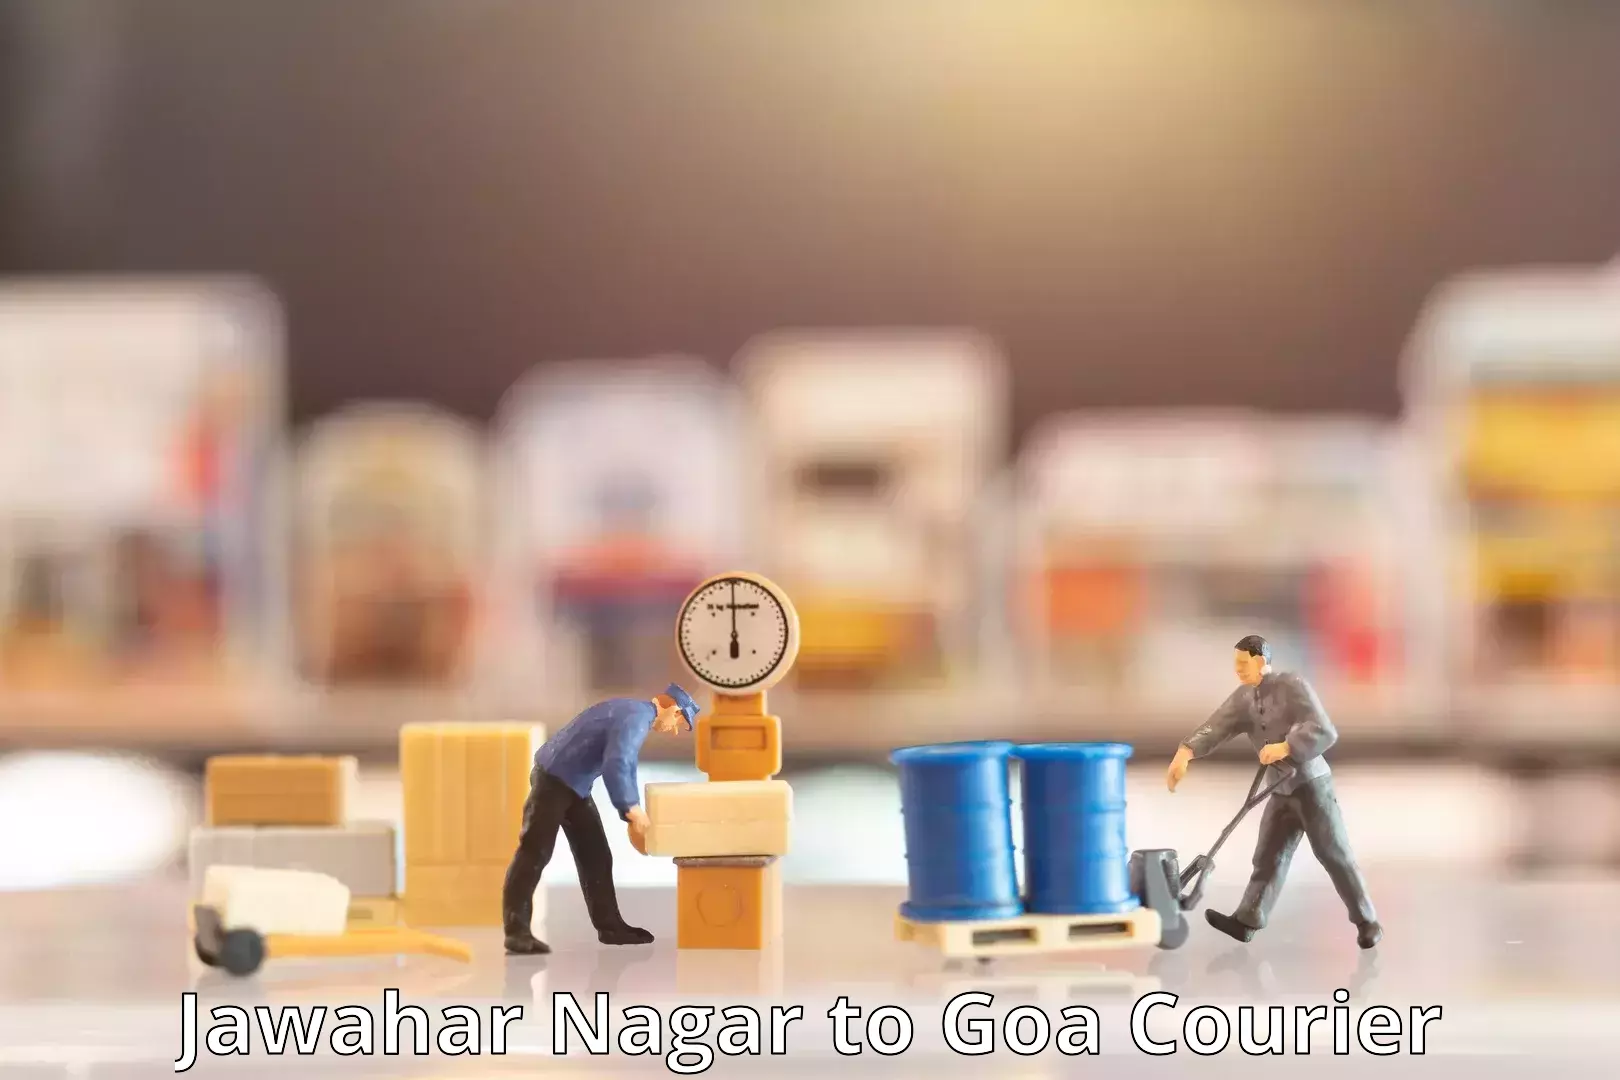 Professional courier services Jawahar Nagar to Ponda